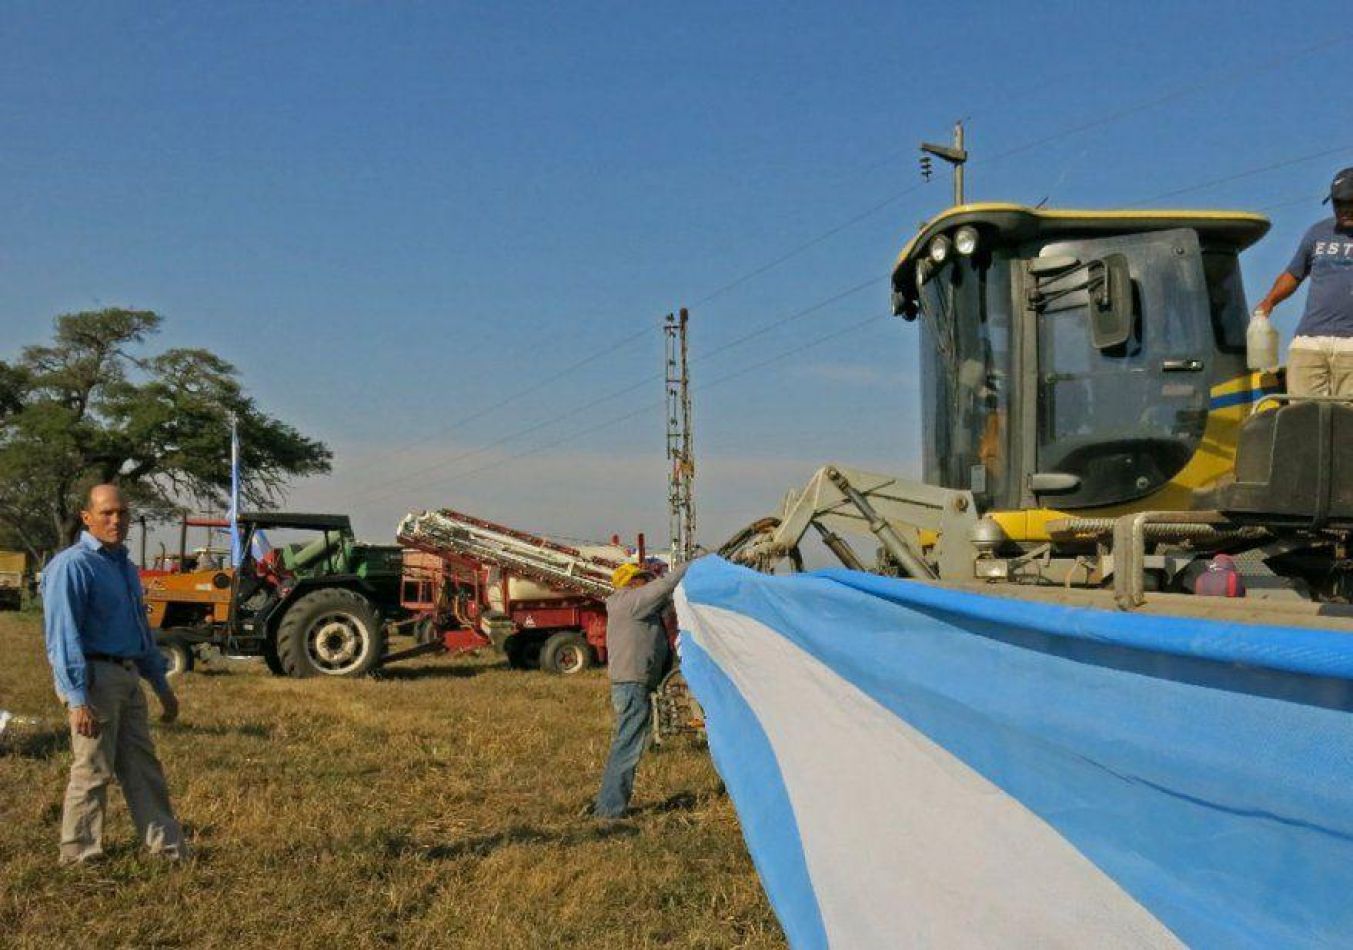 Los salteños no tienen una buena imagen del productor agropecuario, según  una encuesta - Sociedad - Ahora Salta, Noticias en Salta, Argentina